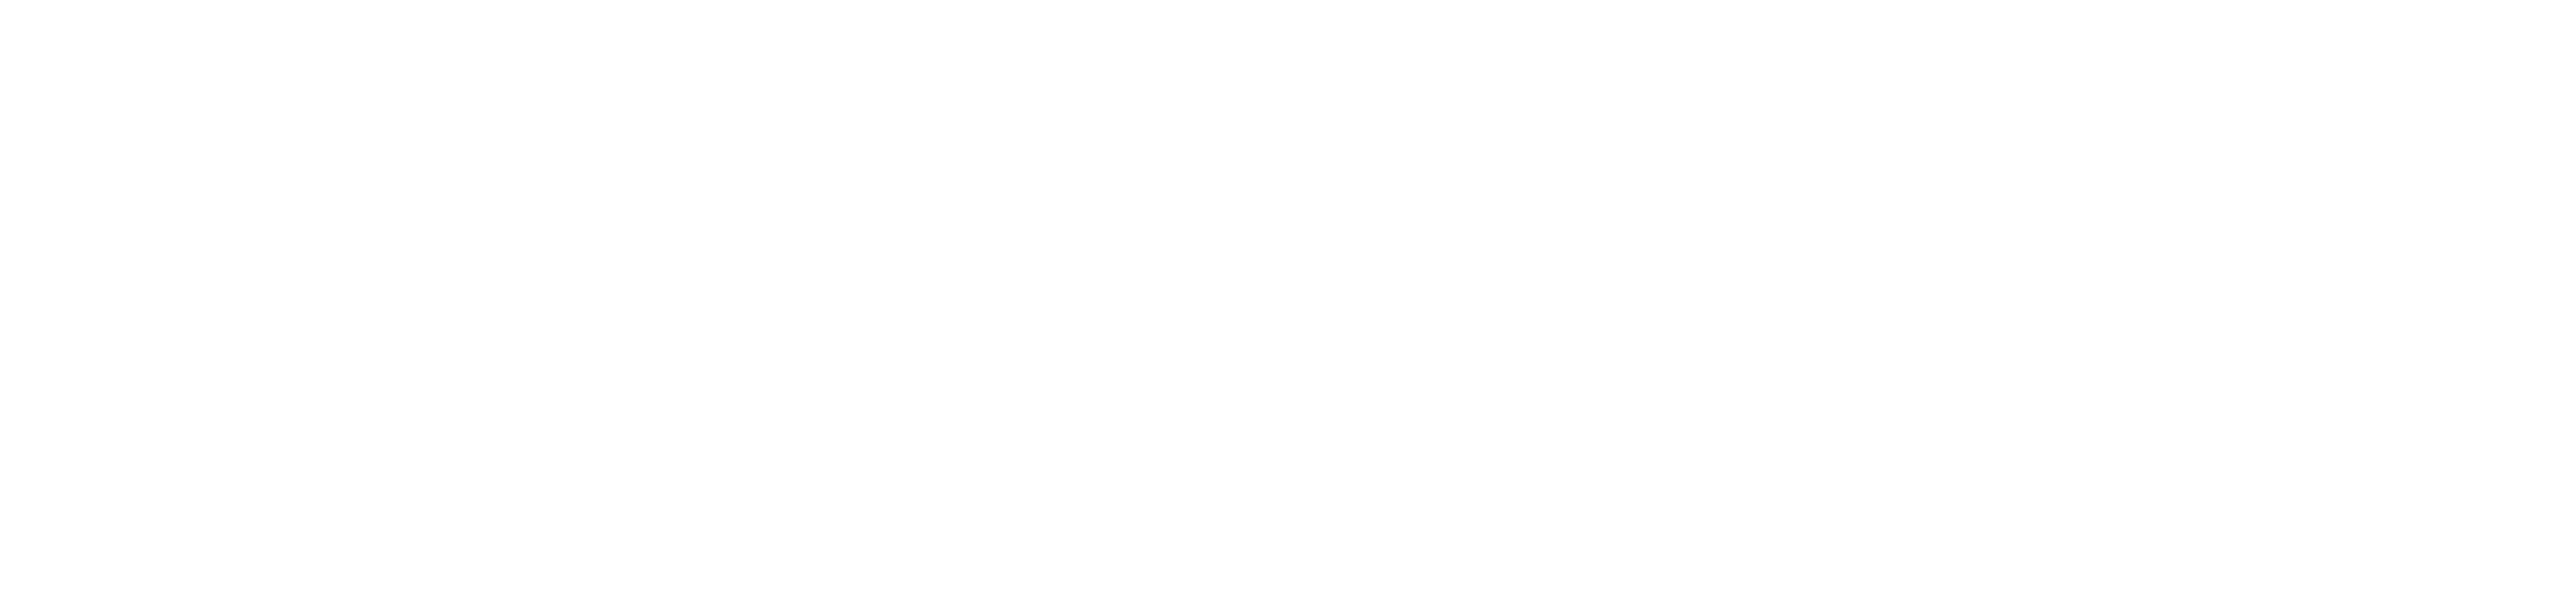 ValleyCode.org Logo